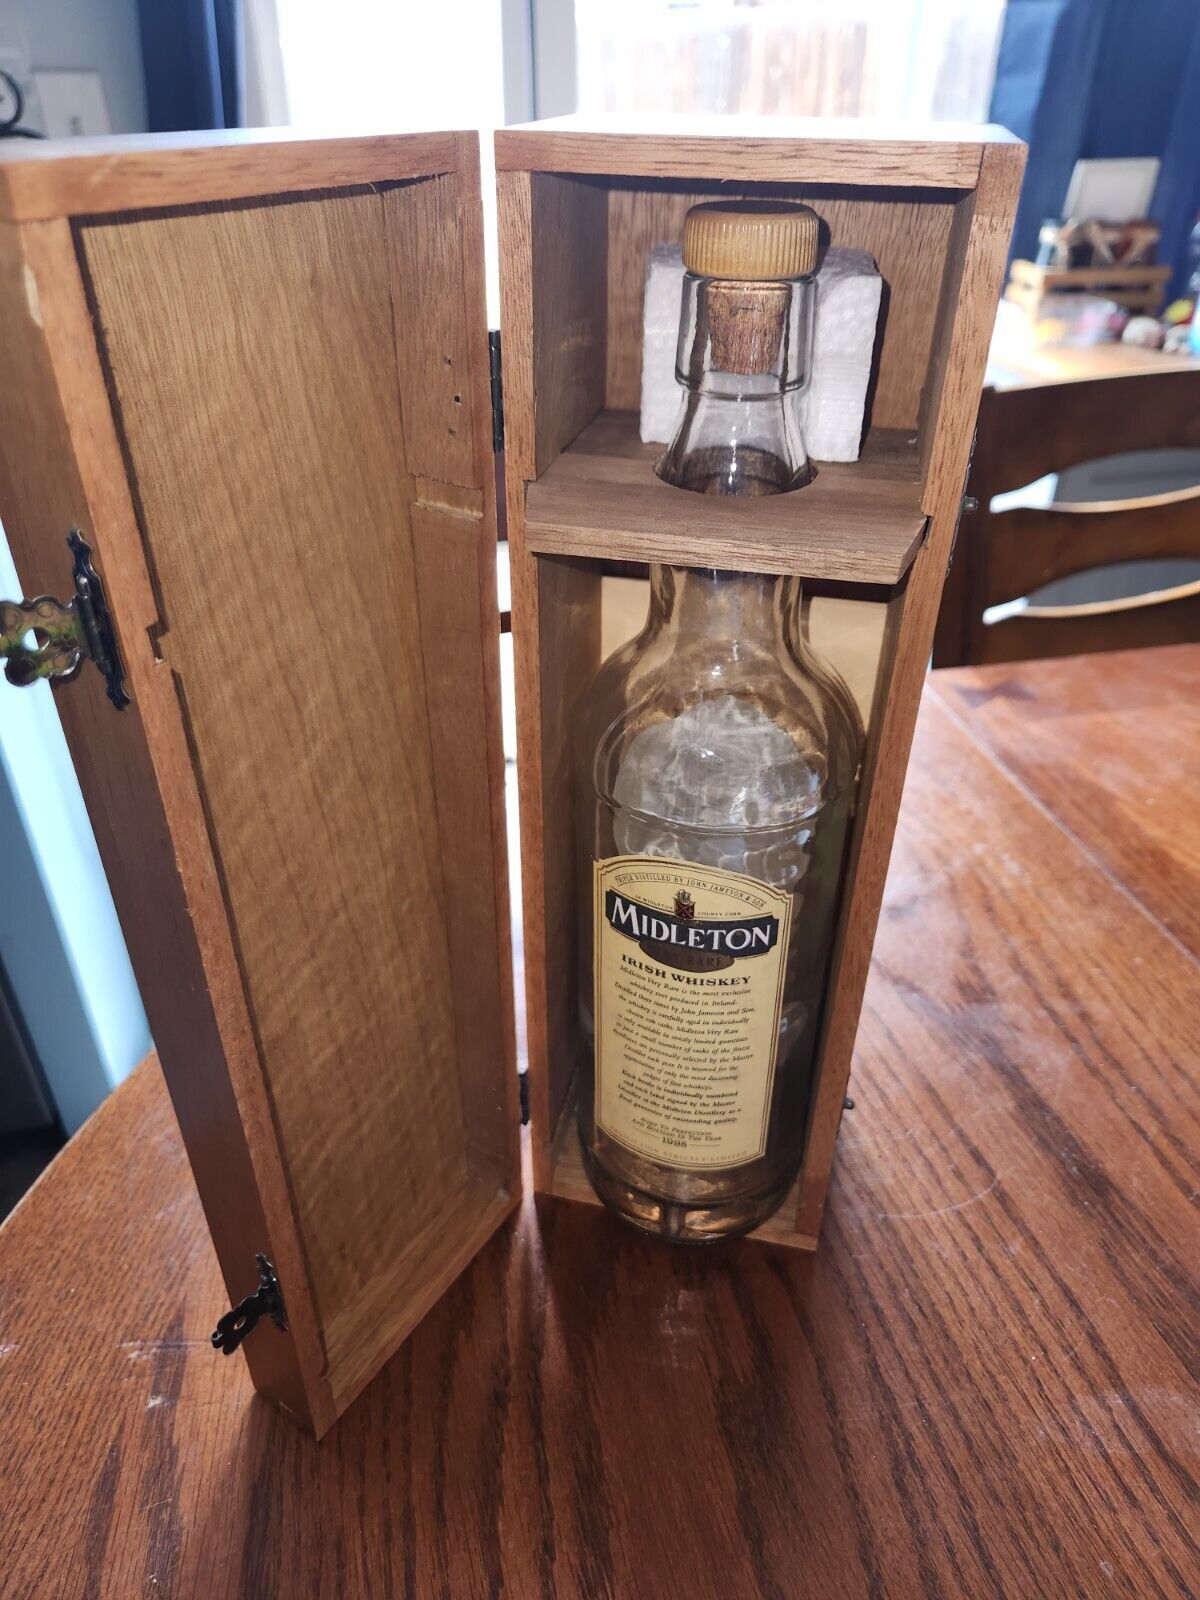 Middleton Very Rare Irish Whiskey Bottle And Case